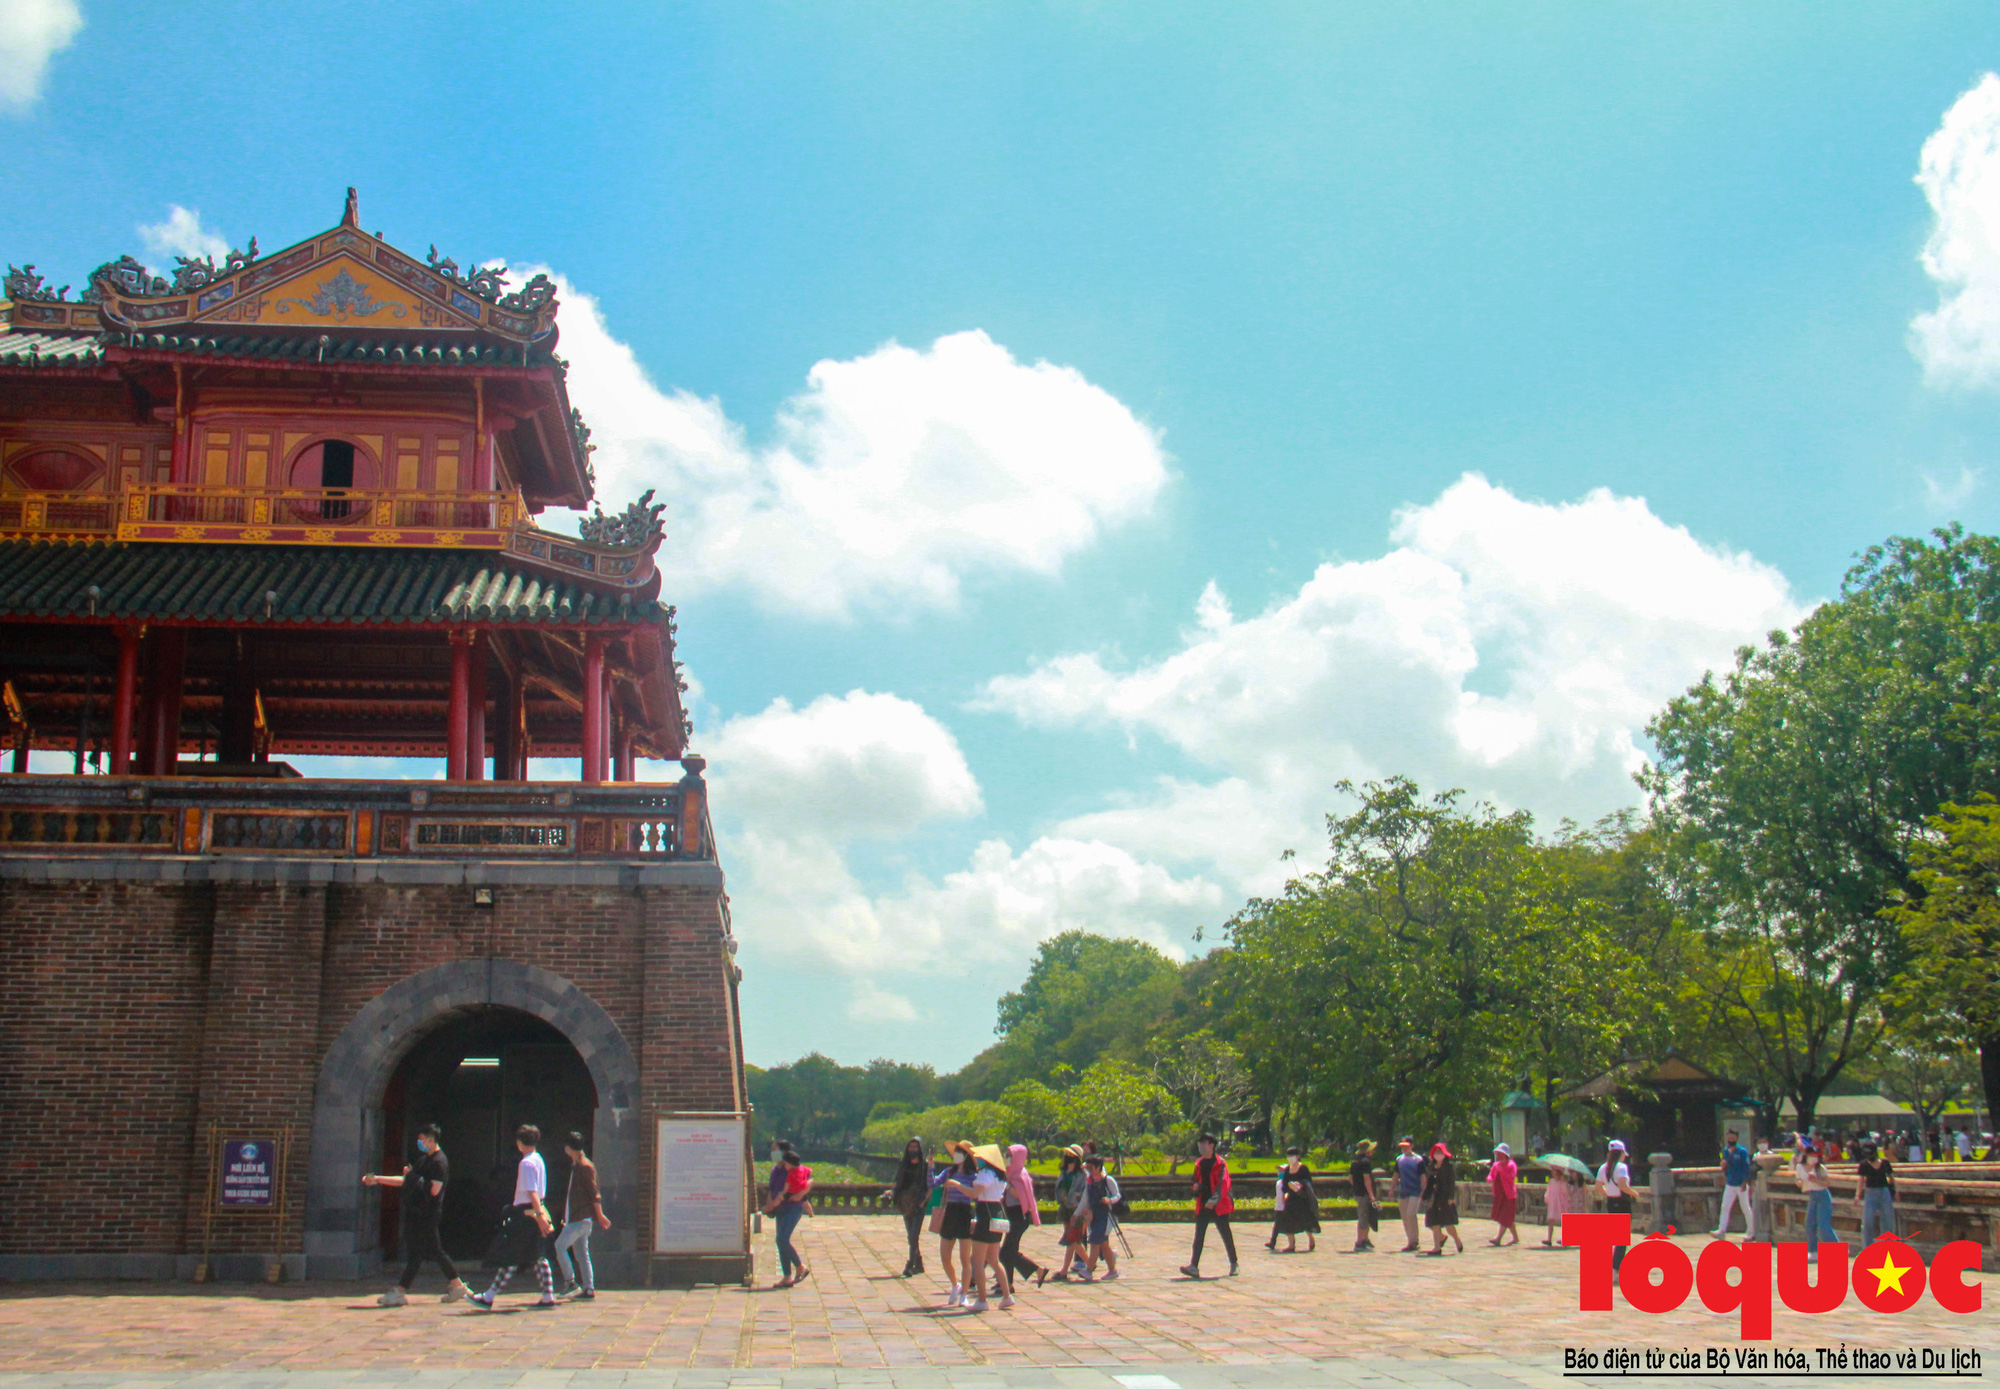 Thừa Thiên Huế, Đà Nẵng, Quảng Nam – Ba địa phương, một điểm đến du lịch an toàn và mến khách